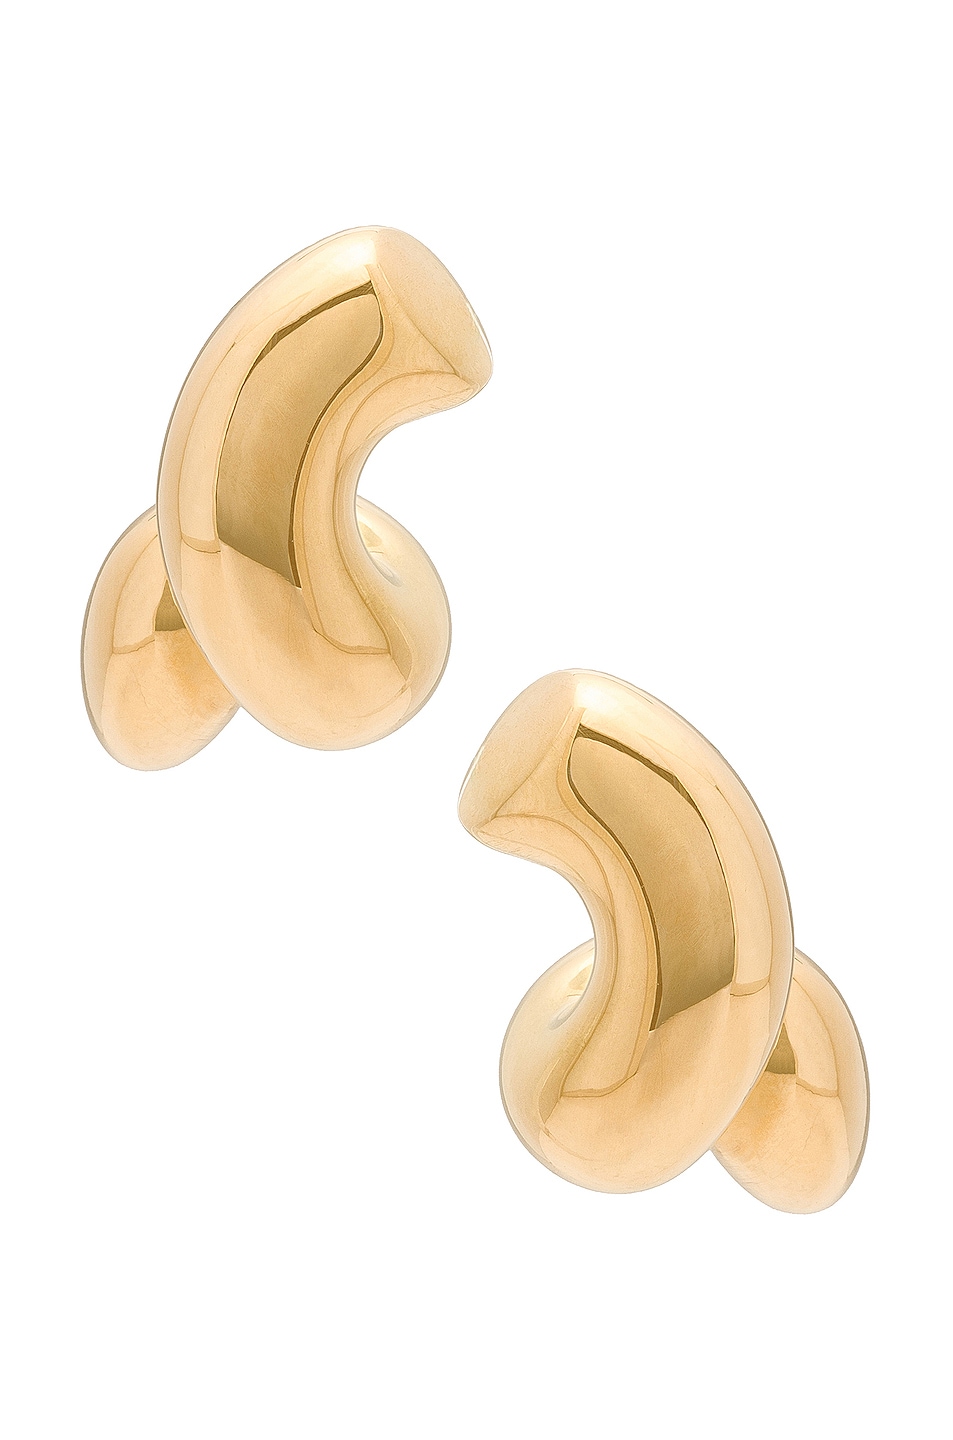 Bottega Veneta Corkscrew Earrings in Yellow Gold | FWRD